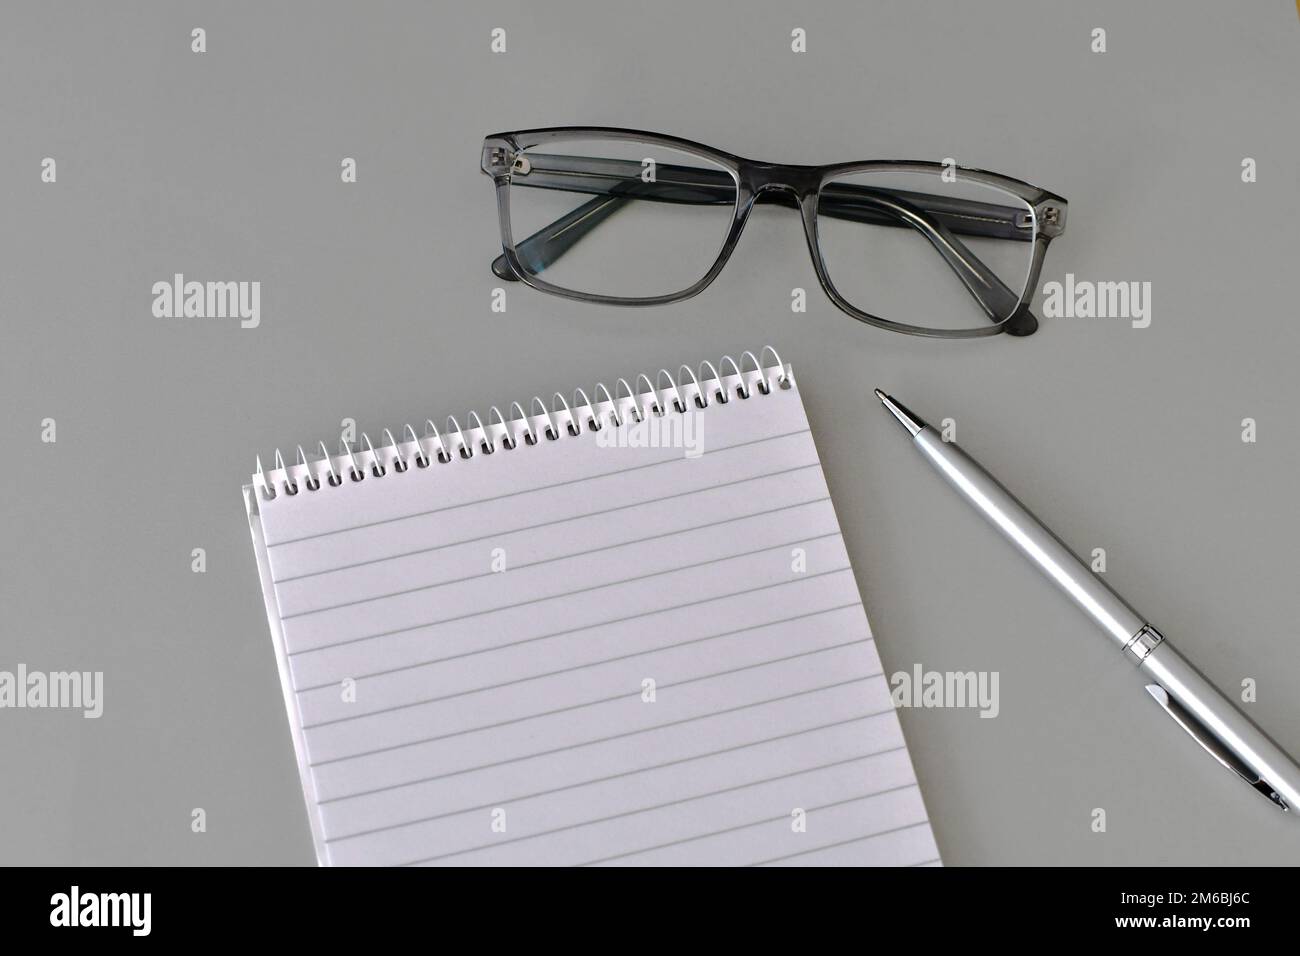 Flaches Display mit Notizblock, Stift und Brille auf hellgrauem Hintergrund. Speicherplatz kopieren. Stockfoto